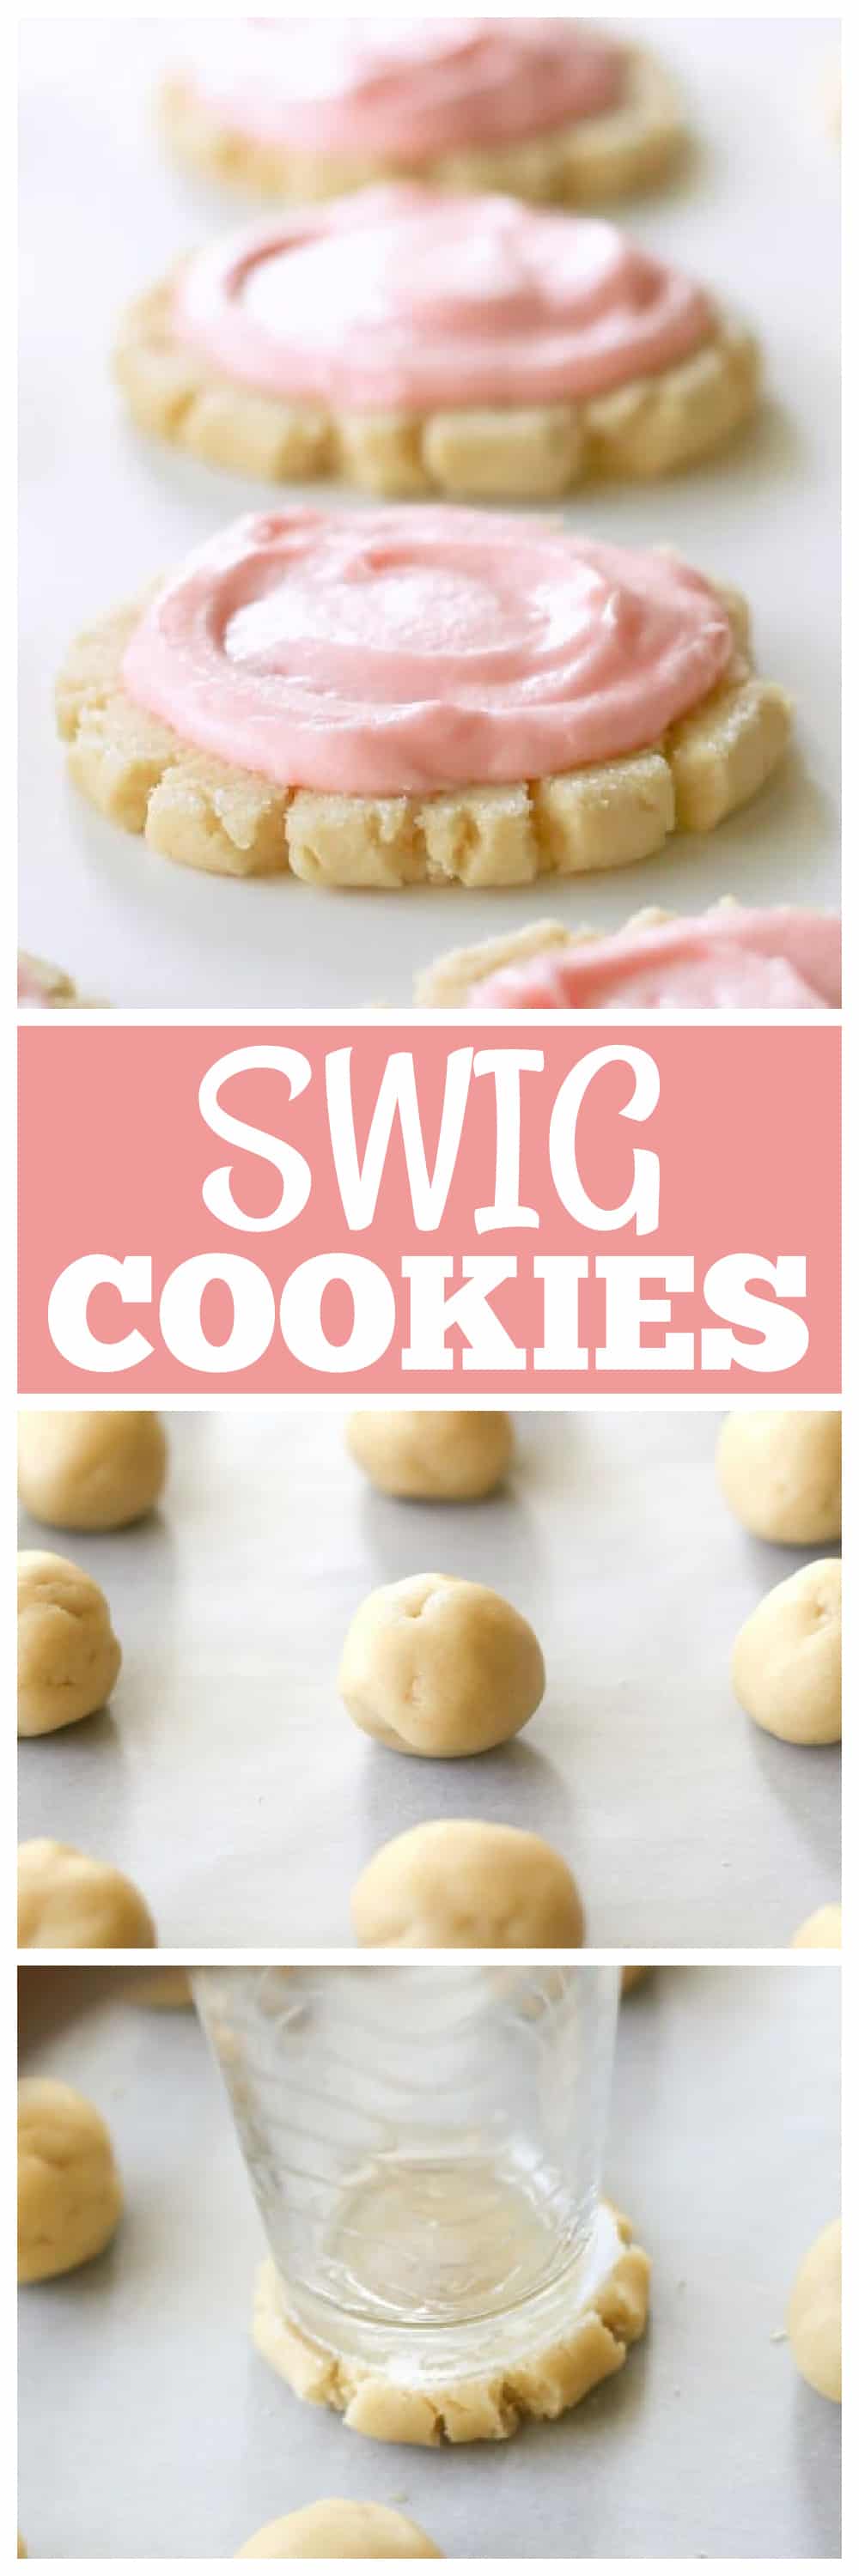 swig cookies